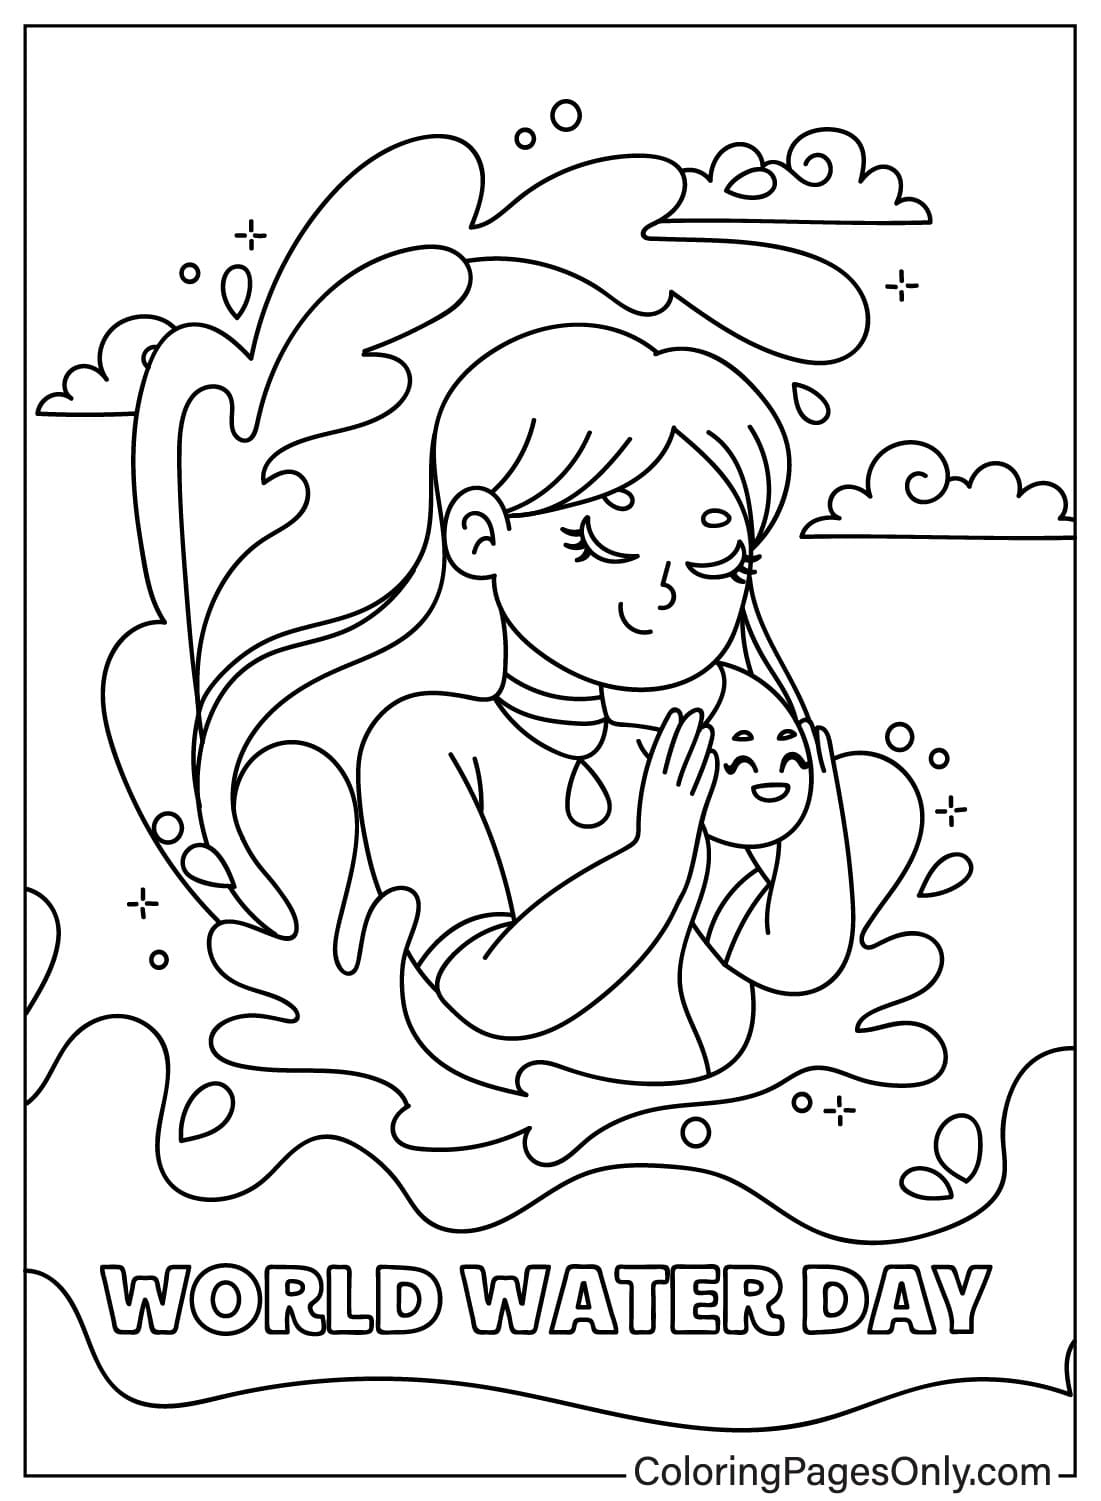 Bilder Malvorlagen zum Weltwassertag vom Weltwassertag